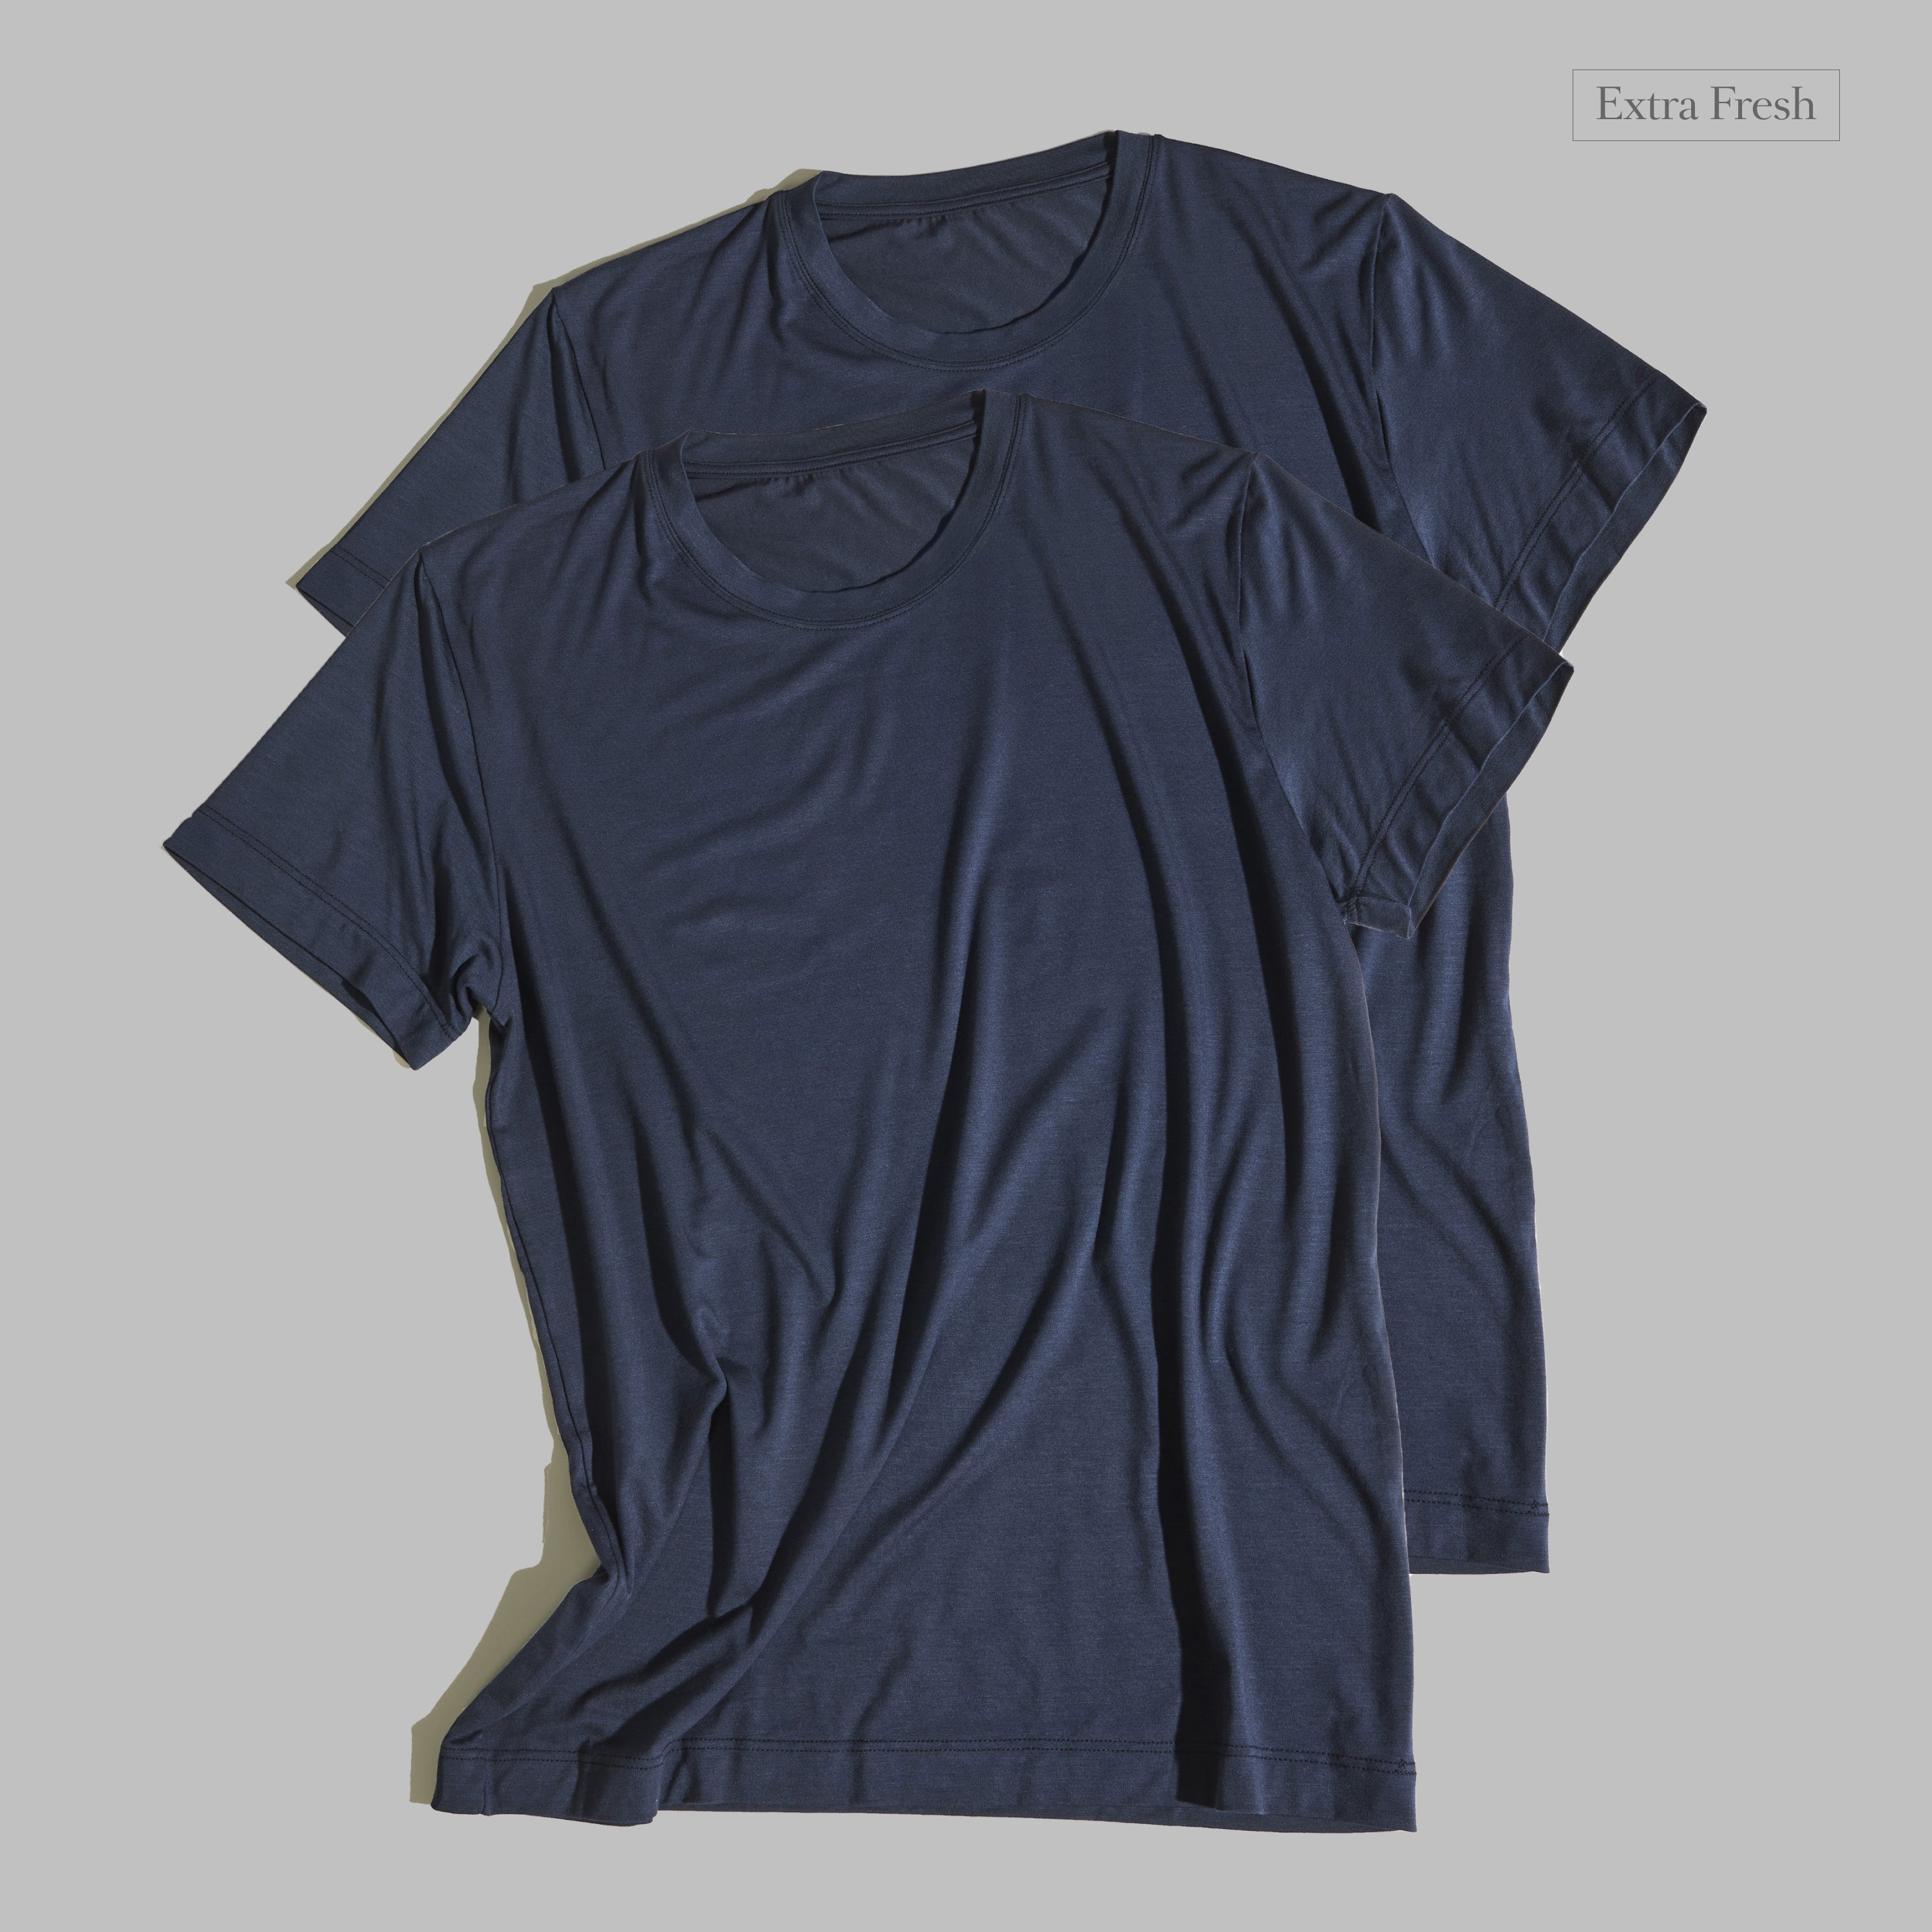 2 x T-shirt Blu Navy Extra Fresh